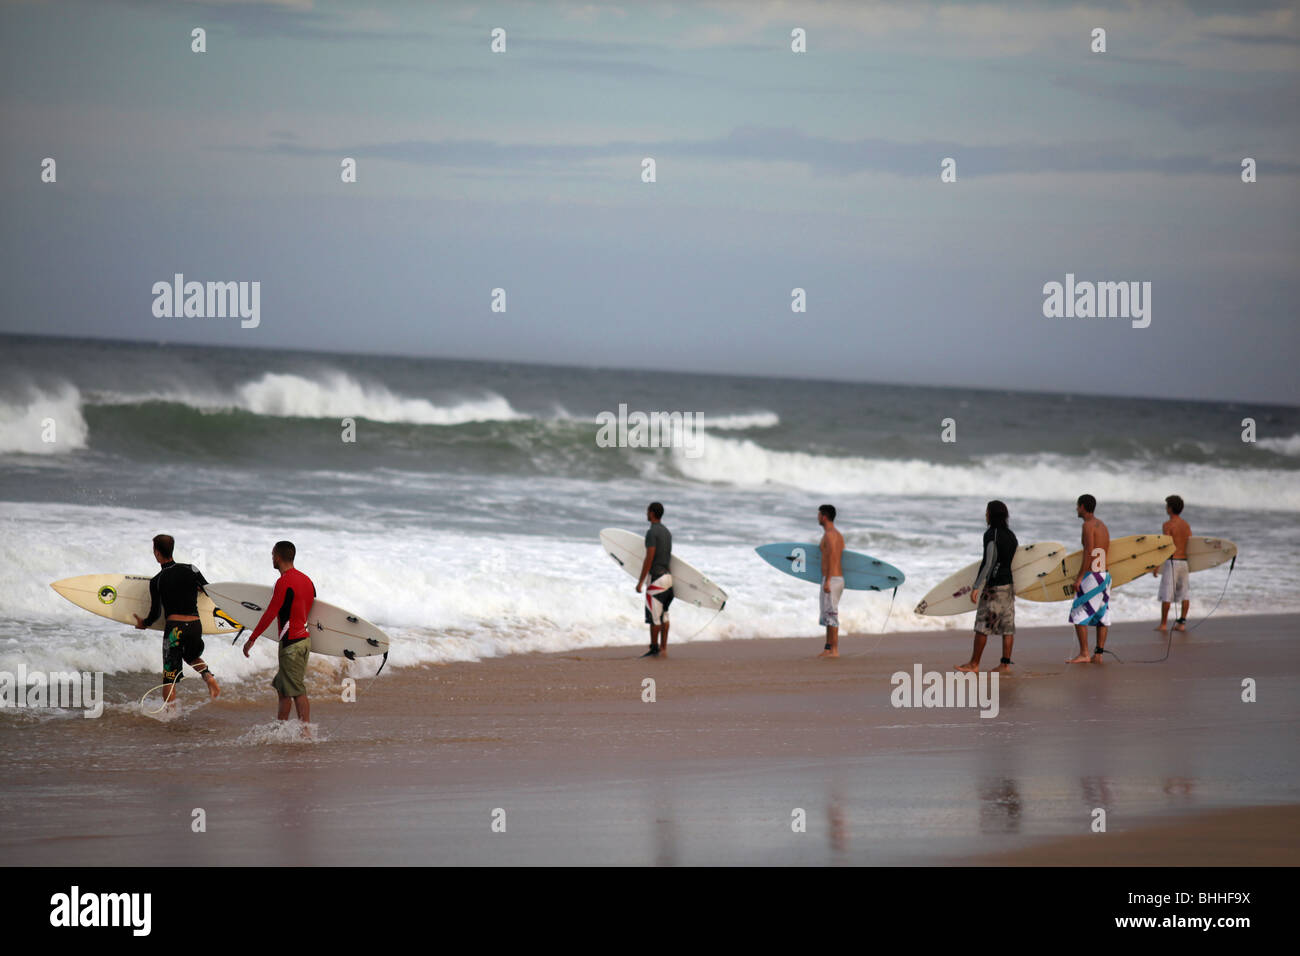 Surfers at Arugam bay in Sri Lanka. Stock Photo